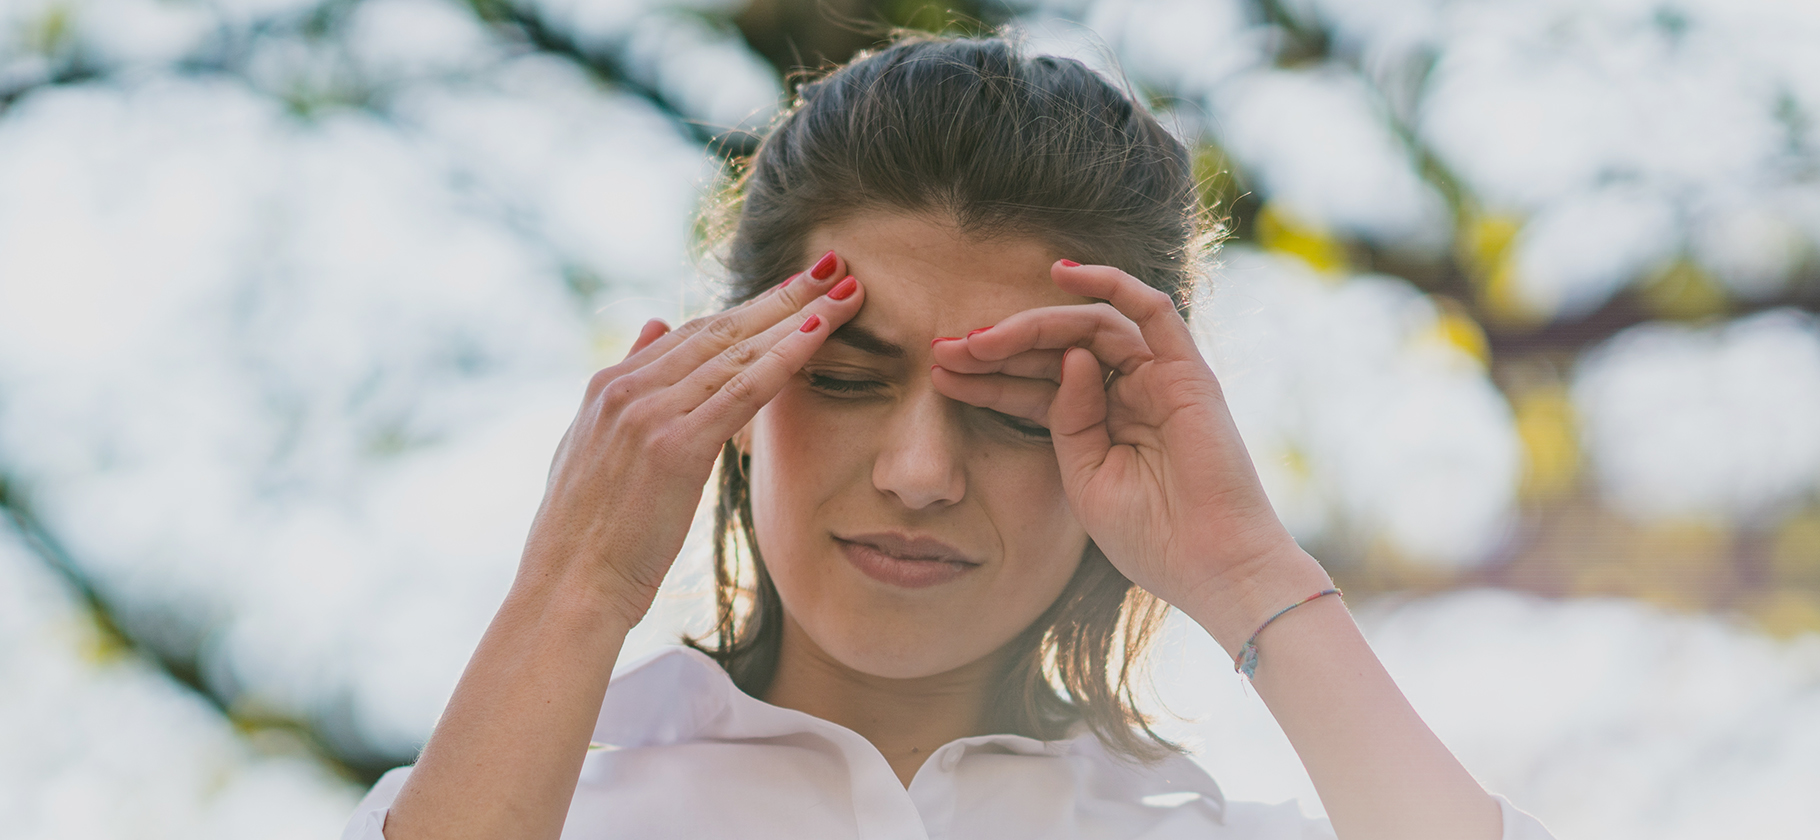 Физическая нагрузка и стресс: разбираемся, почему болит голова